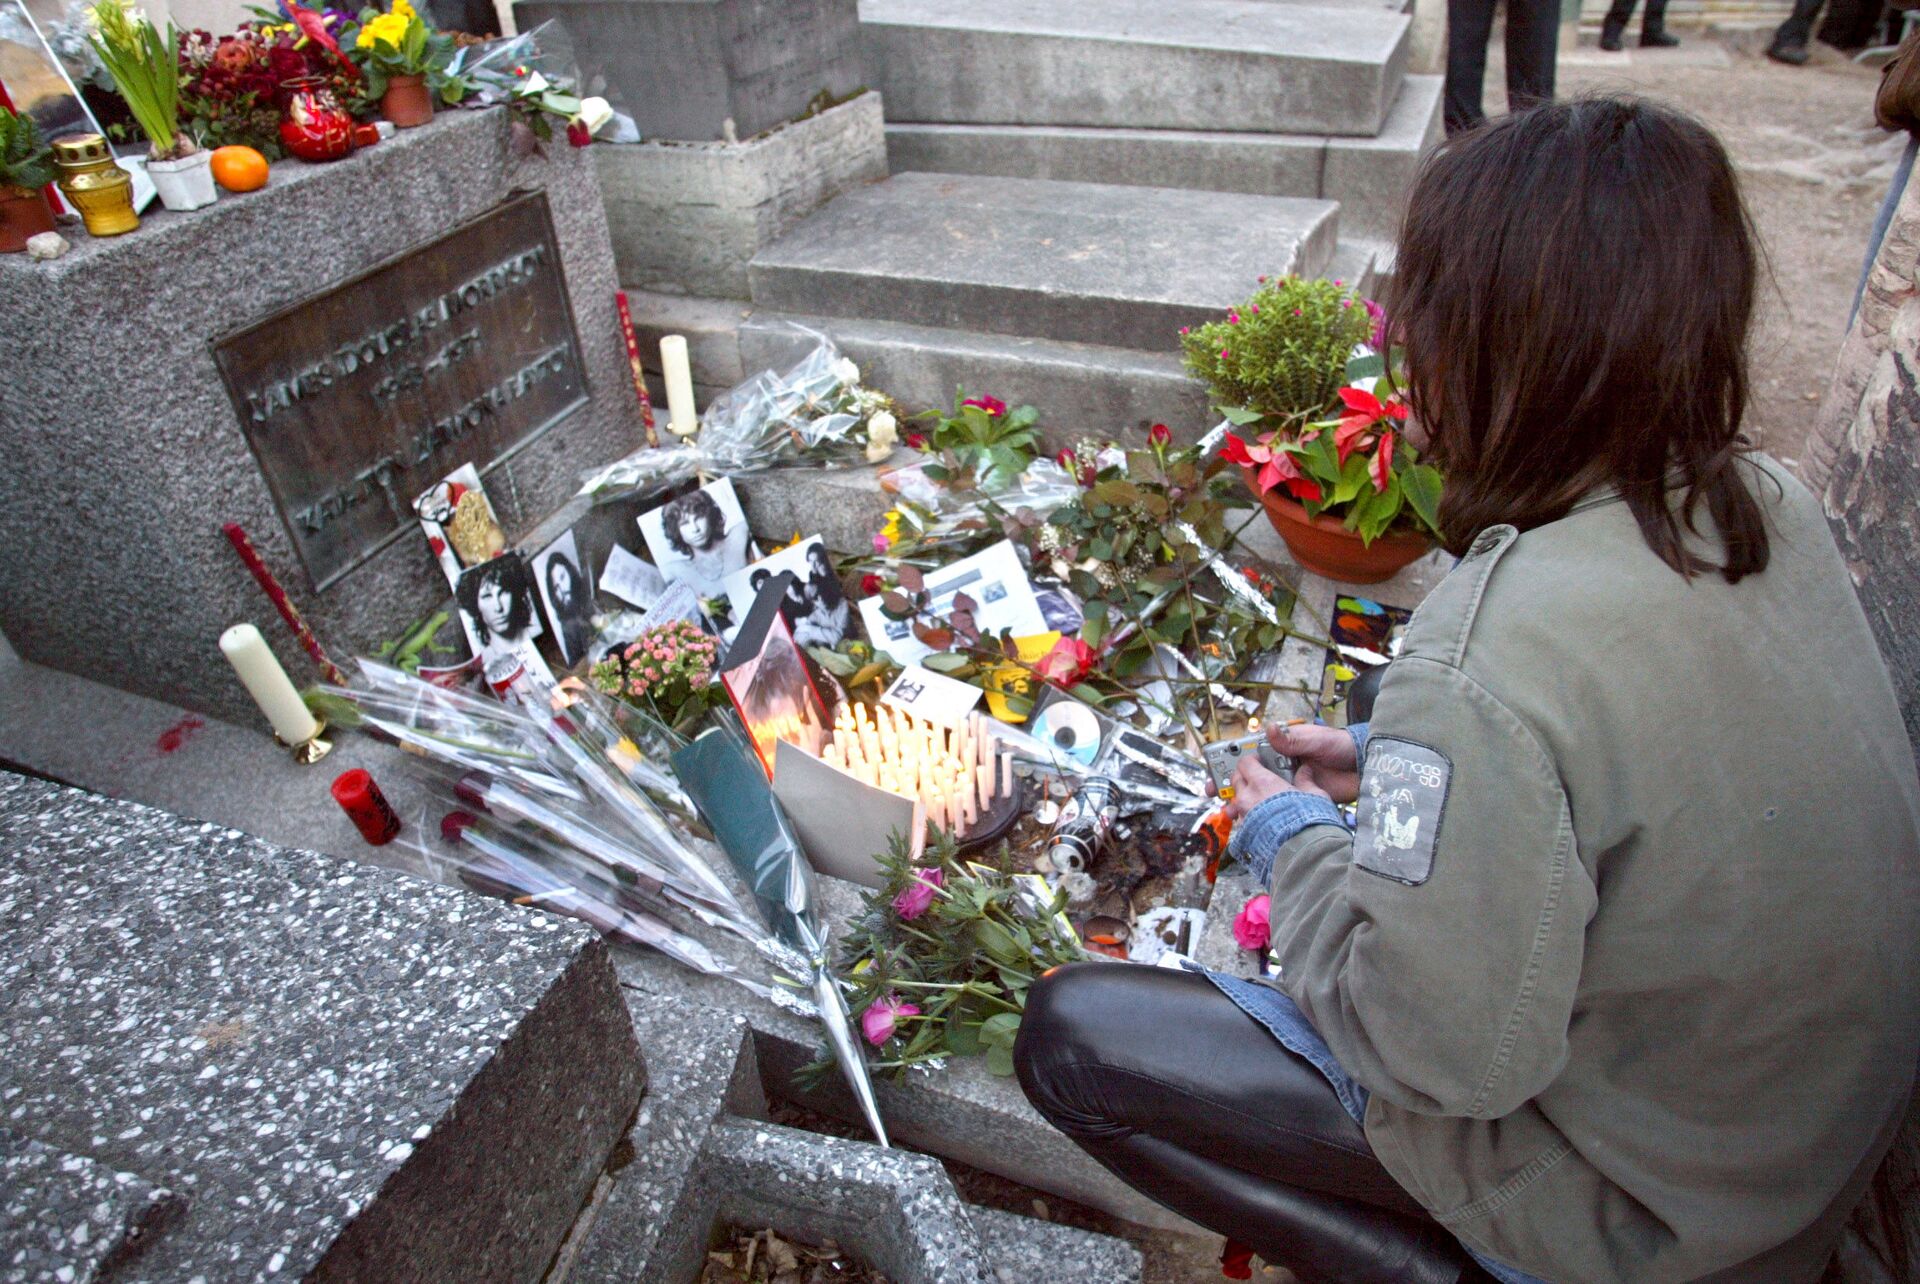 Џим Морисон сахрањен је у Паризу на гробљу „Пер Лашез“ на којем почивају Молијер, Балзак, Шопен, Пруст, Оскар Вајлд... - Sputnik Србија, 1920, 13.07.2021